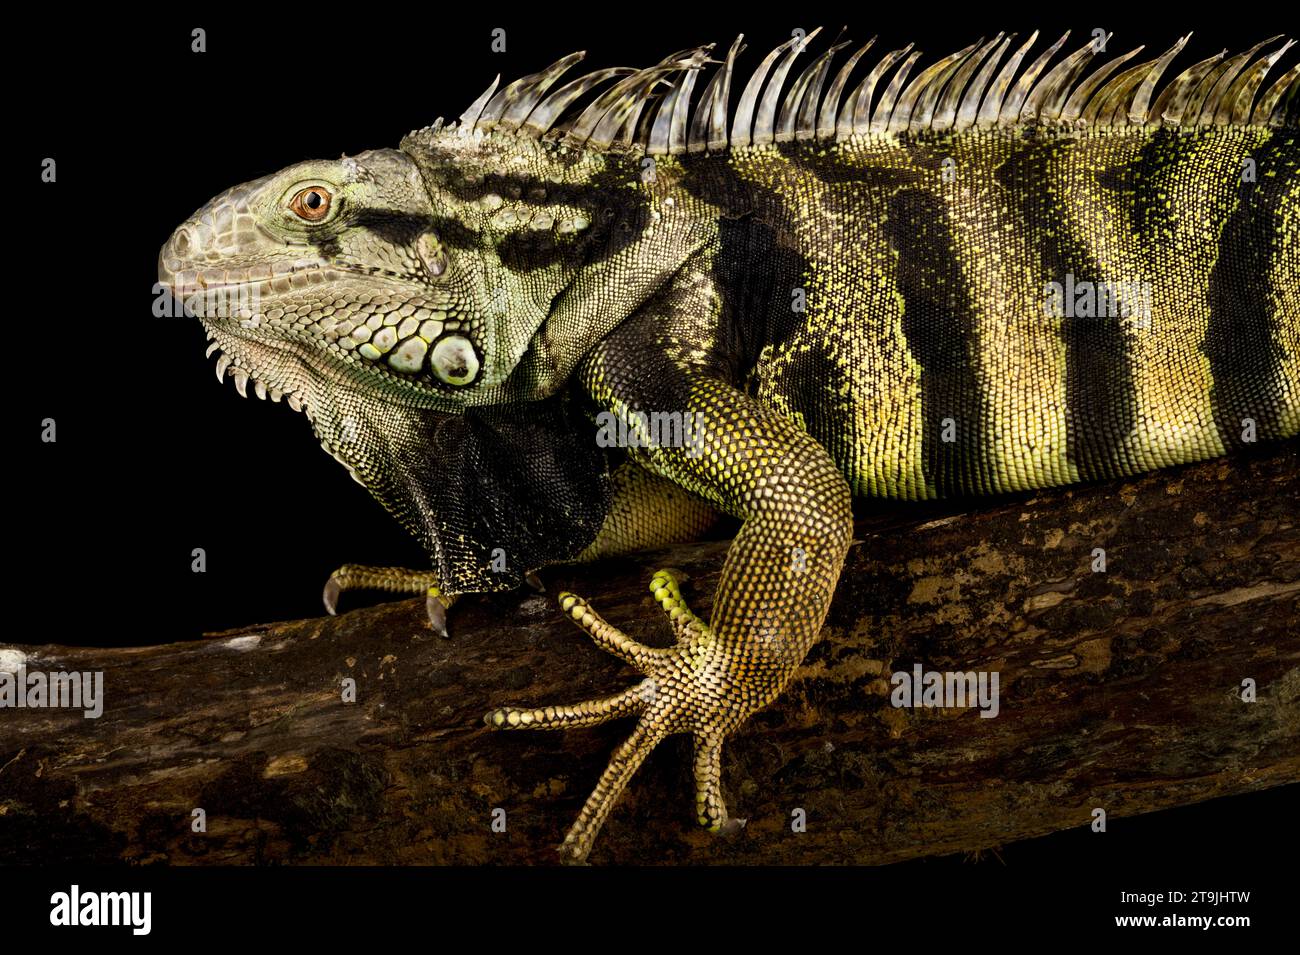 Der Grüne Iguana (Iguana iguana) ist eine variable Riesenechsenart. Dieses Exemplar stammt aus Kolumbien. Stockfoto